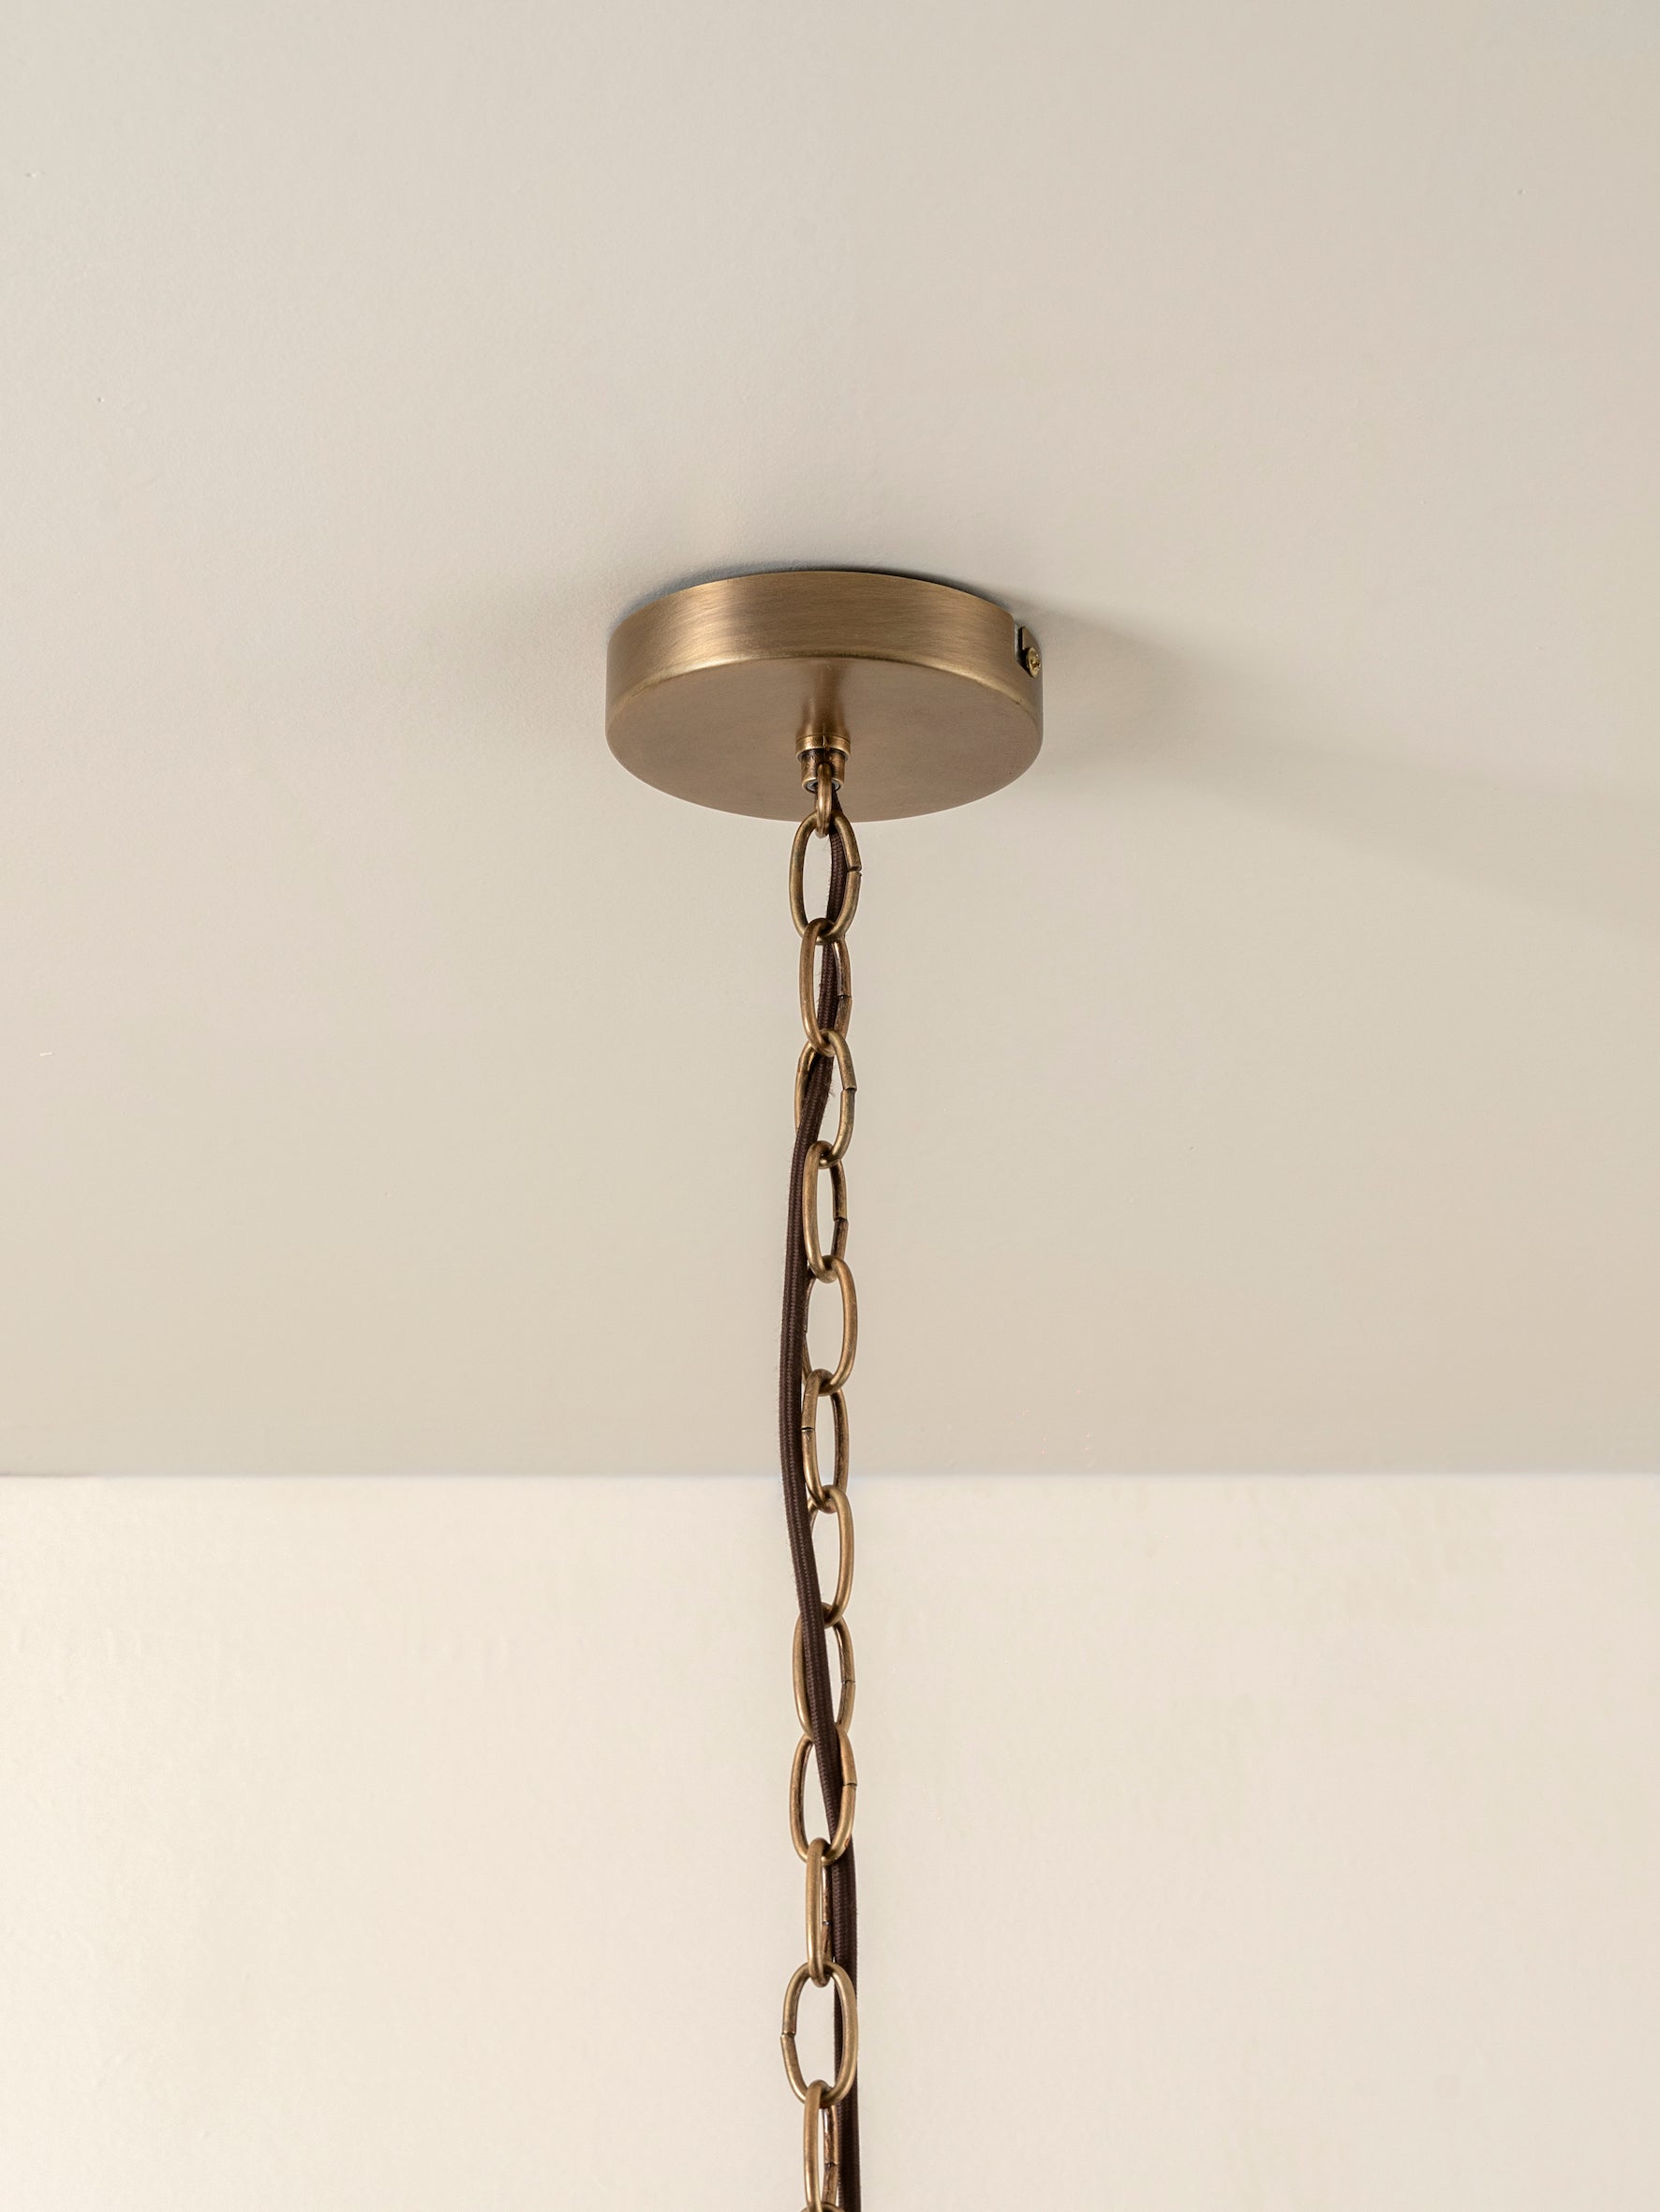 Waverly - 6 light aged brass and white porcelain pendant | Ceiling Light | Lights & Lamps | UK | Modern Affordable Designer Lighting